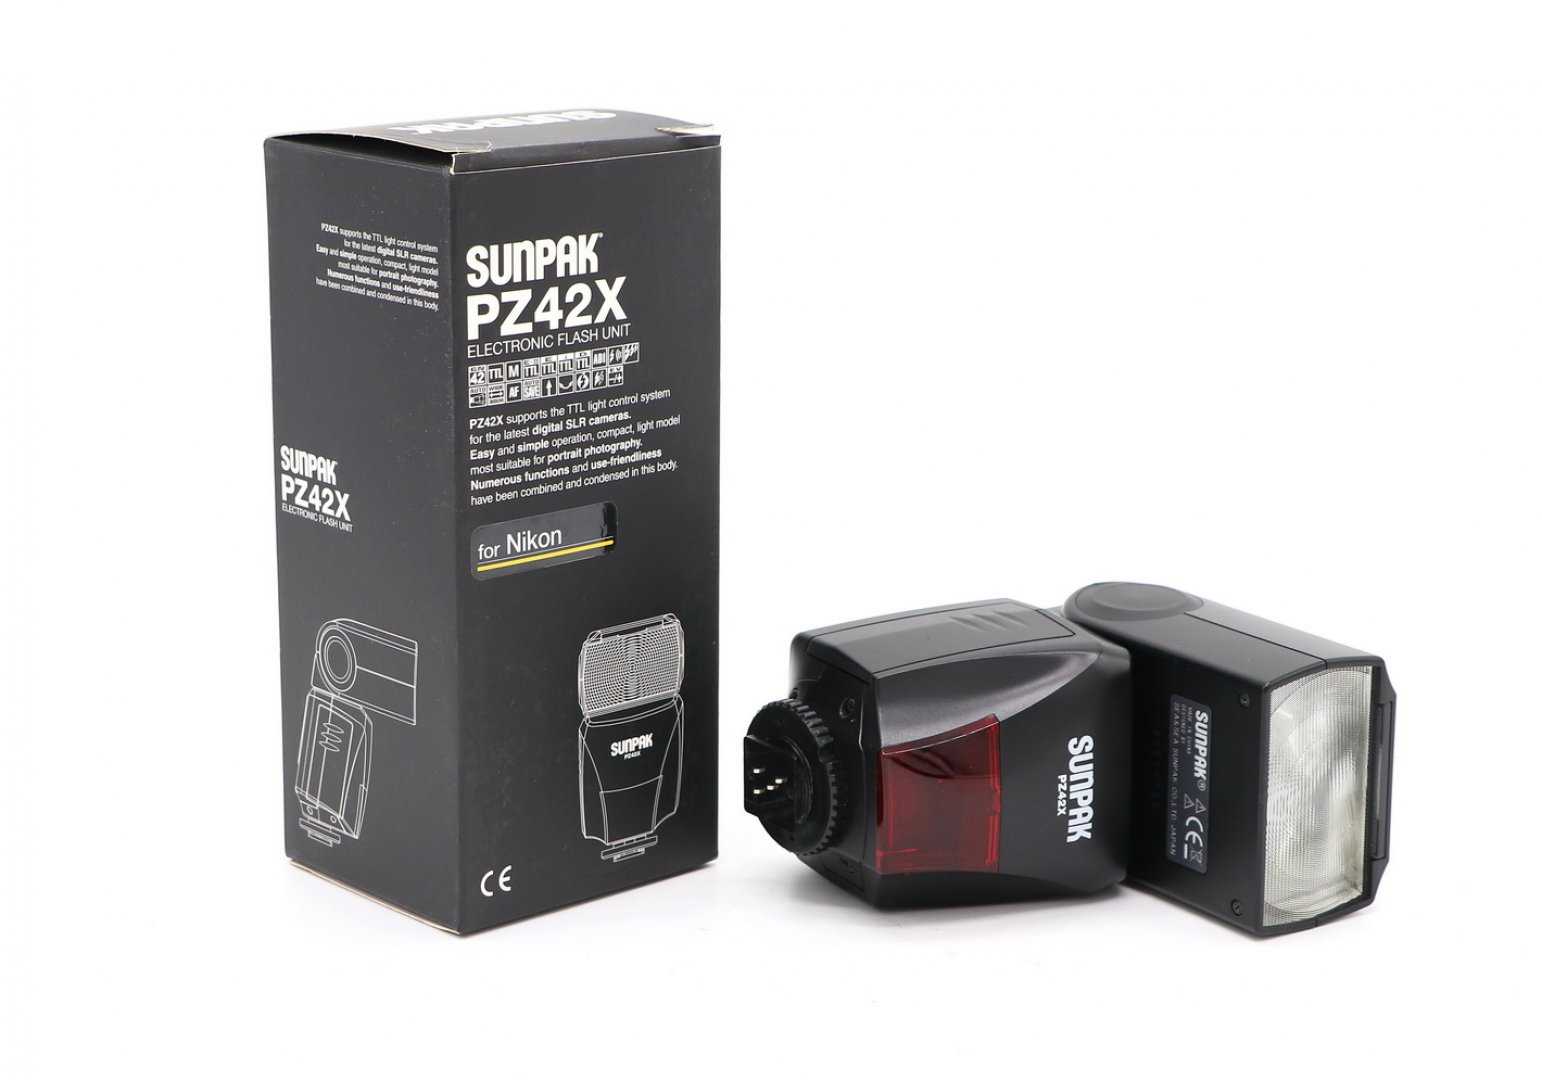 Sunpak pz42x digital flash for sony купить по акционной цене , отзывы и обзоры.